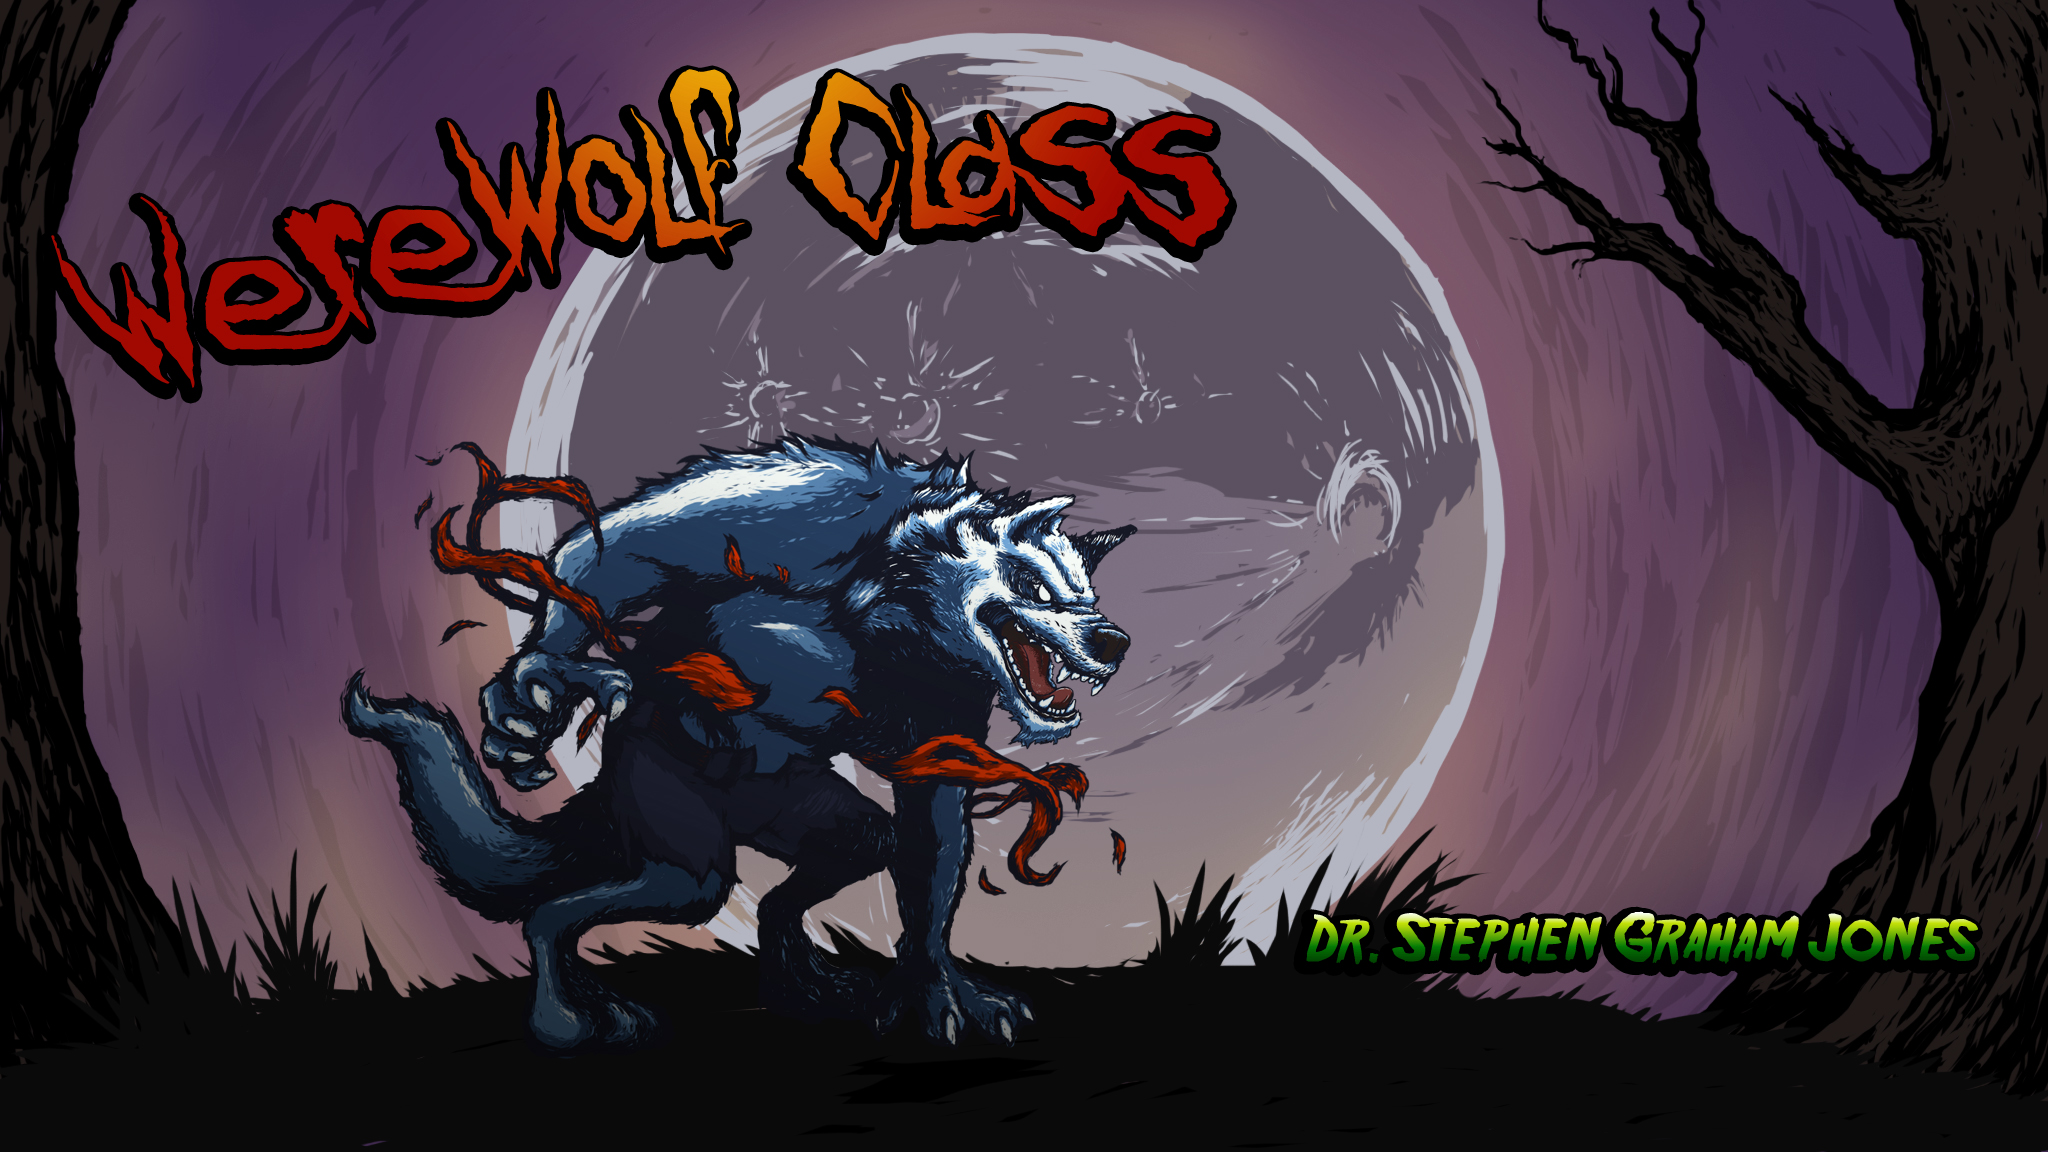 vox popoli de werewolf